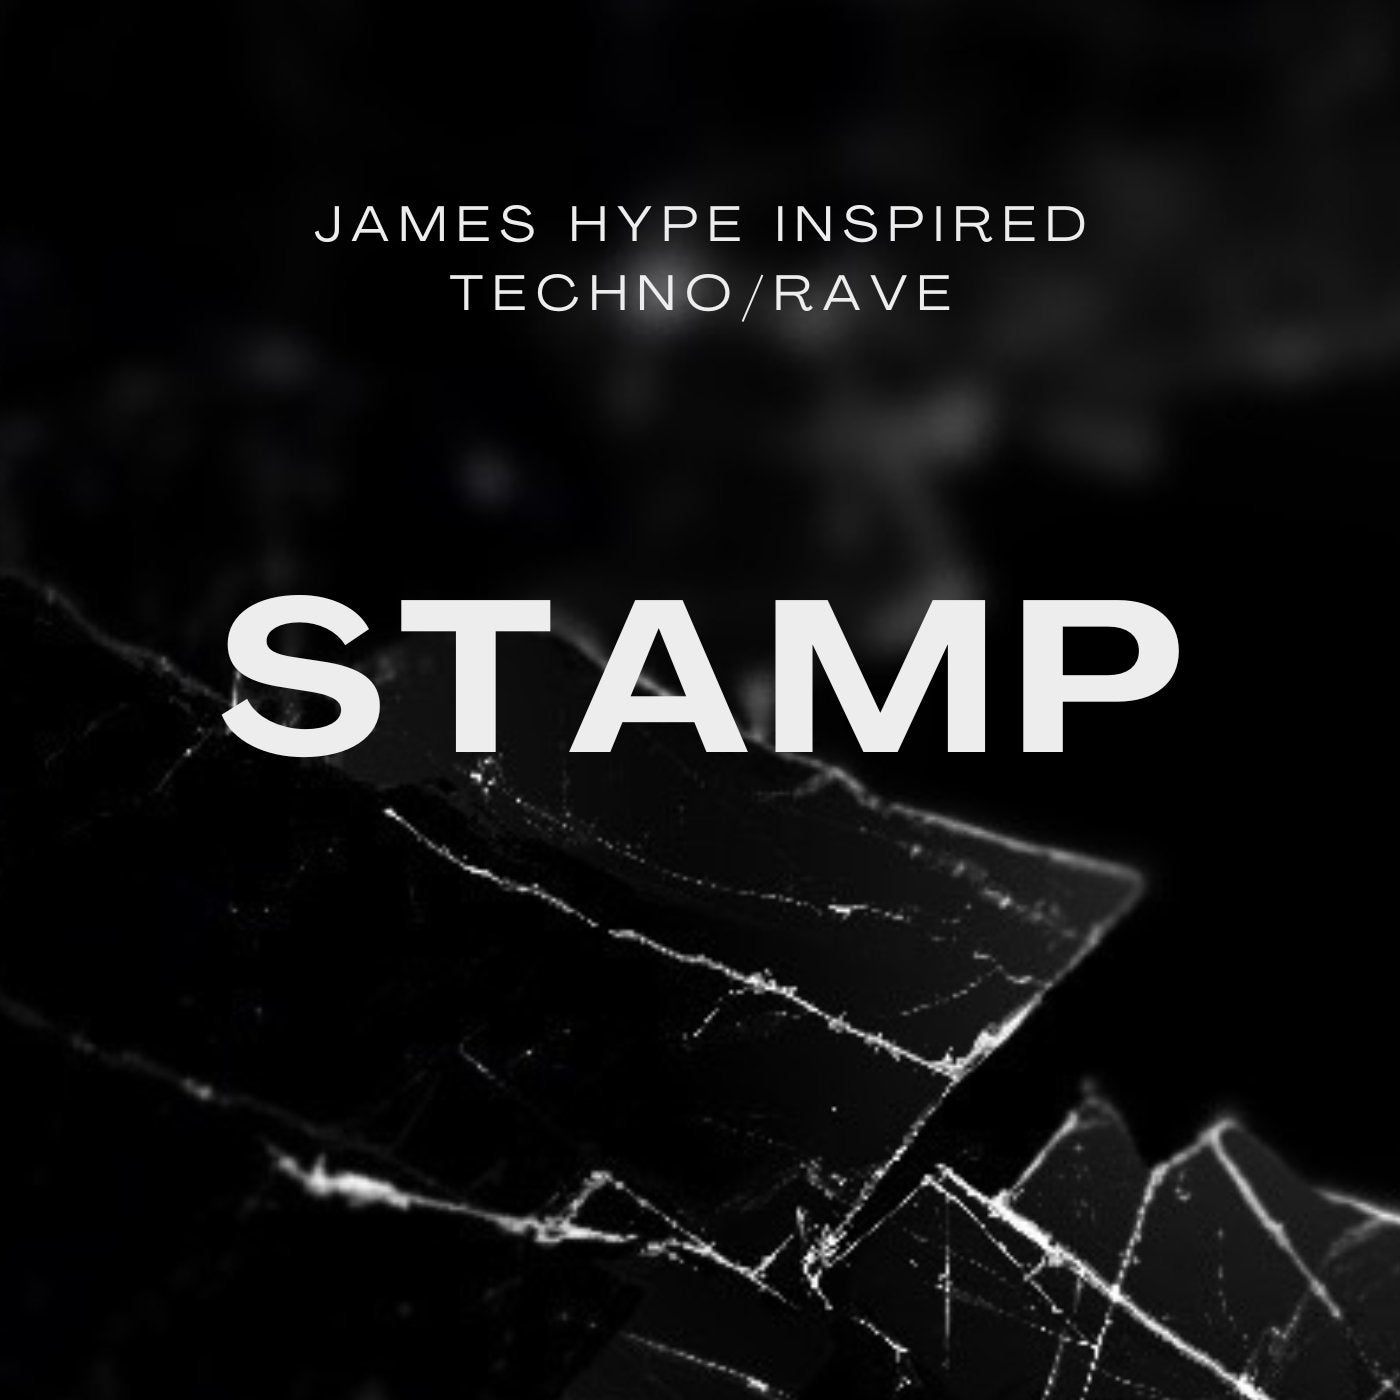 STAMP - Mark Roma - Scraps Audio